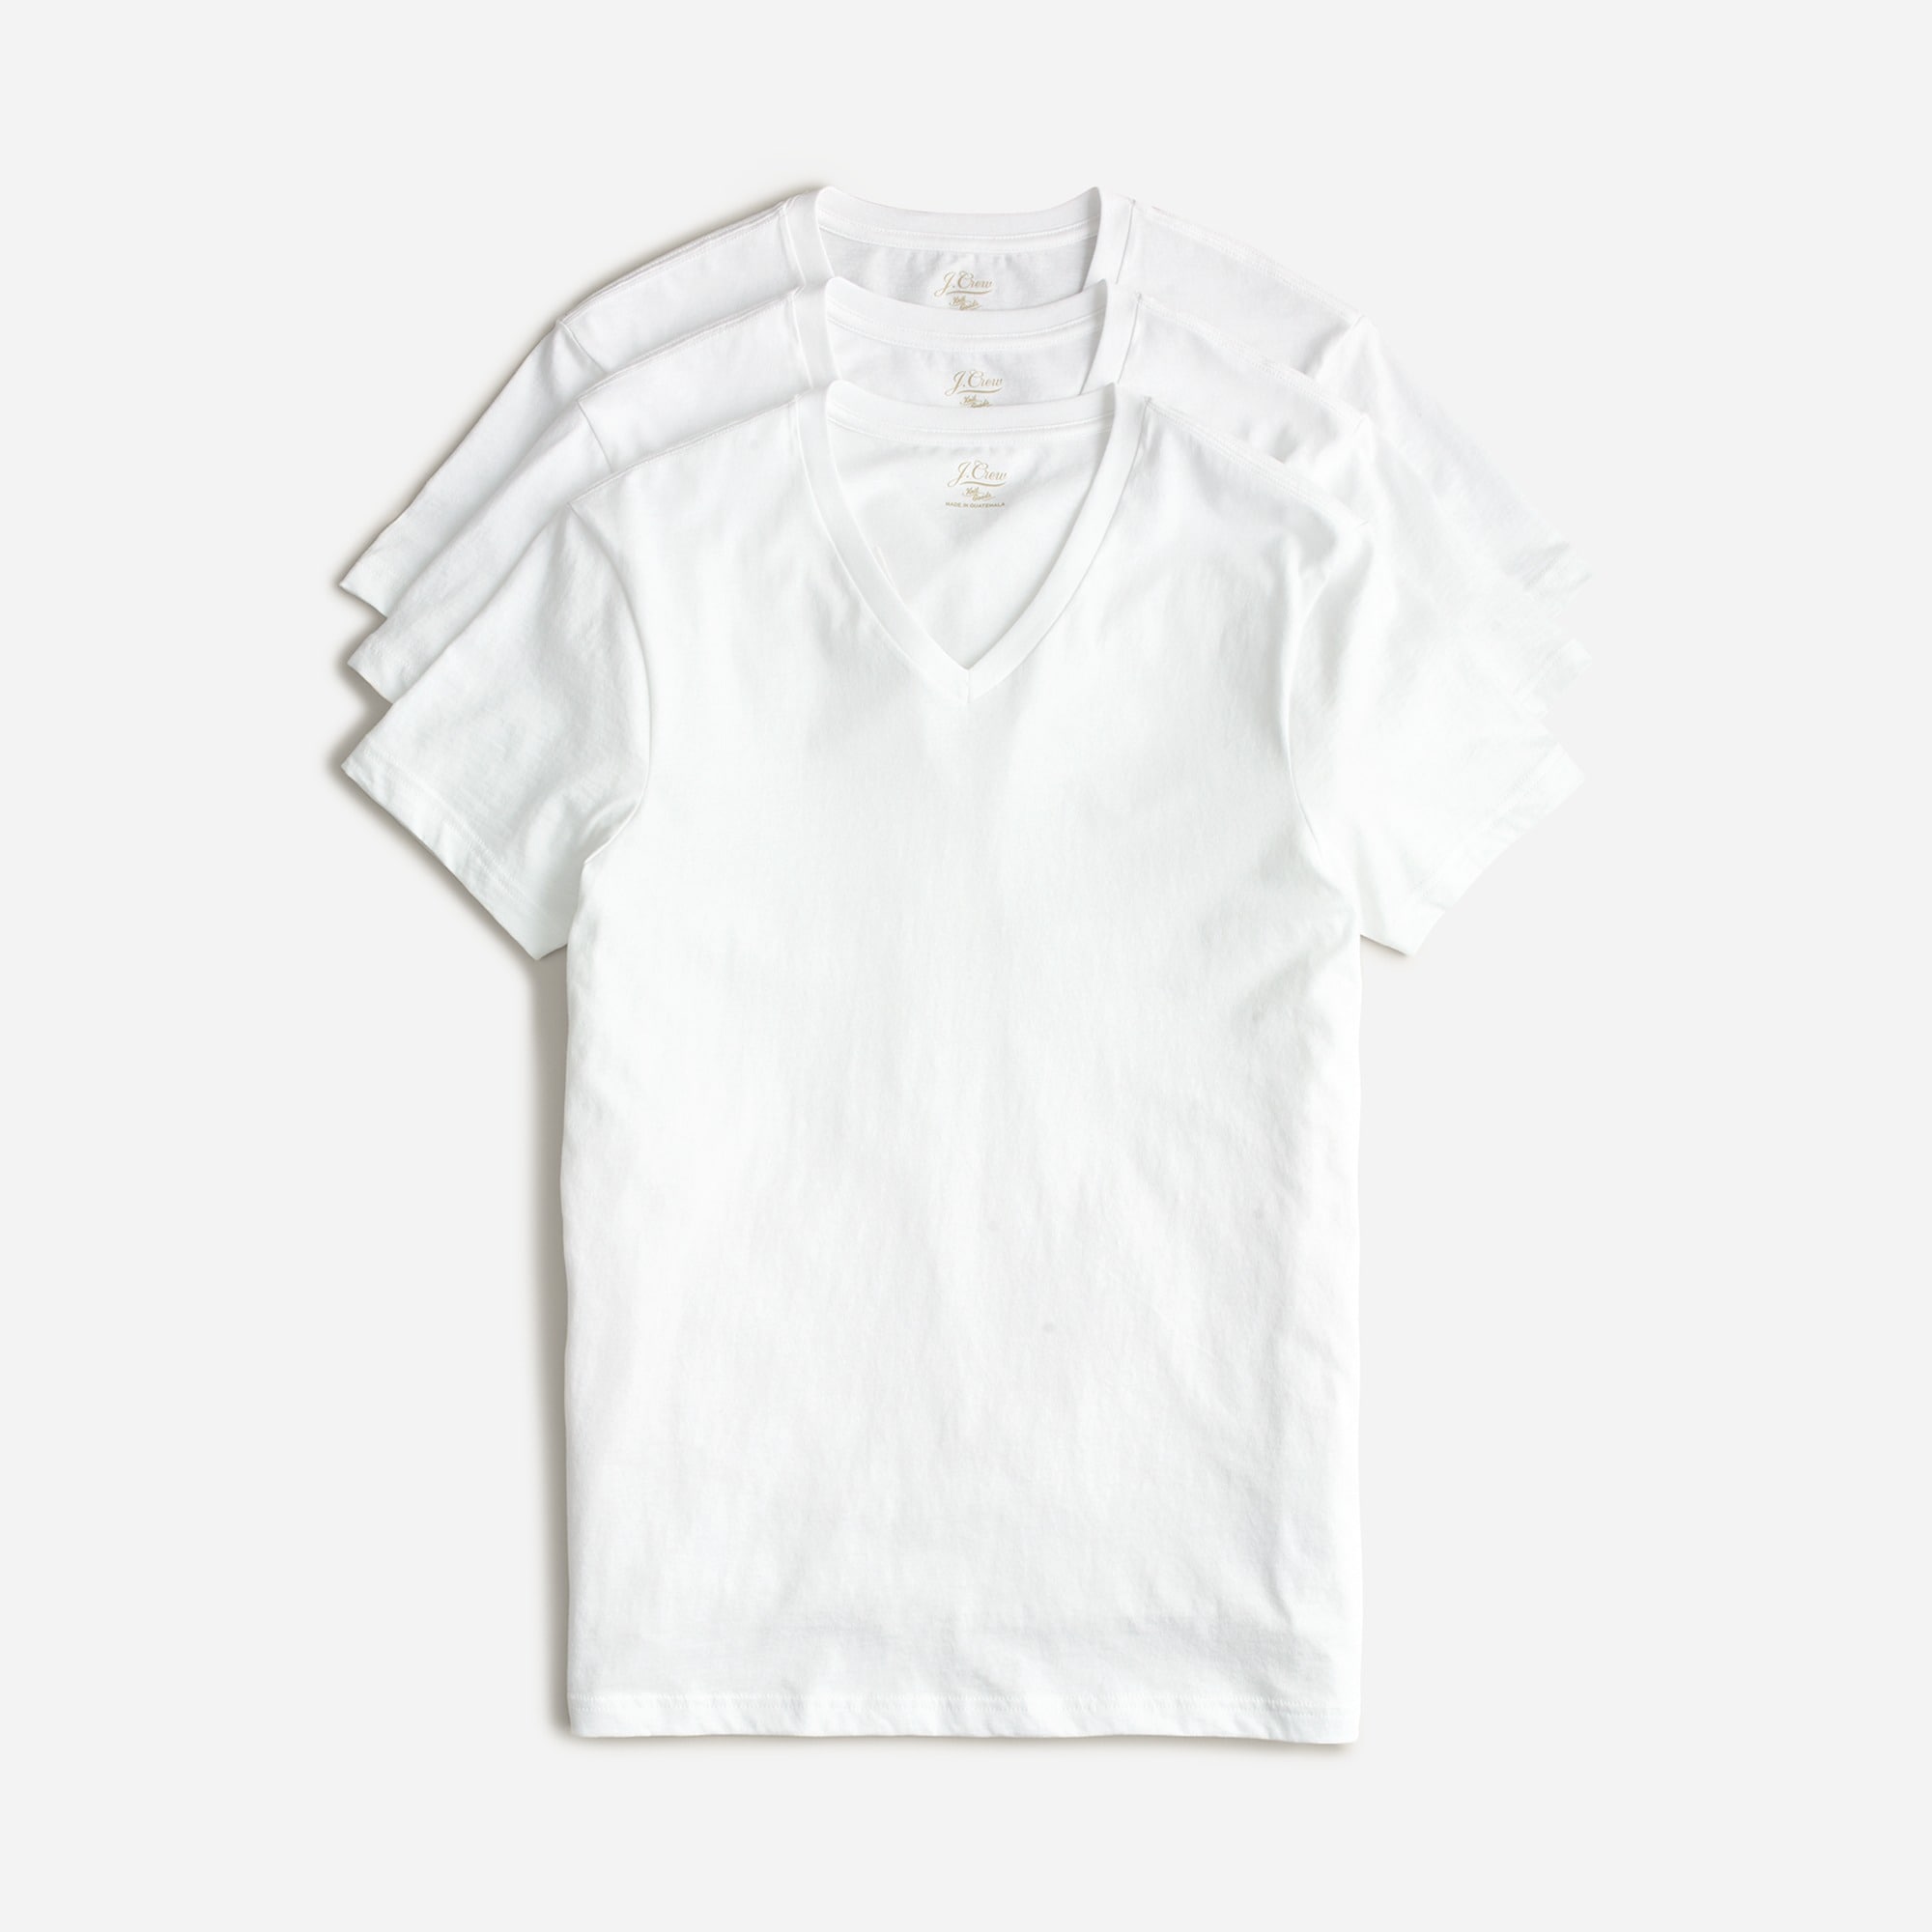  White V-neck undershirts three-pack